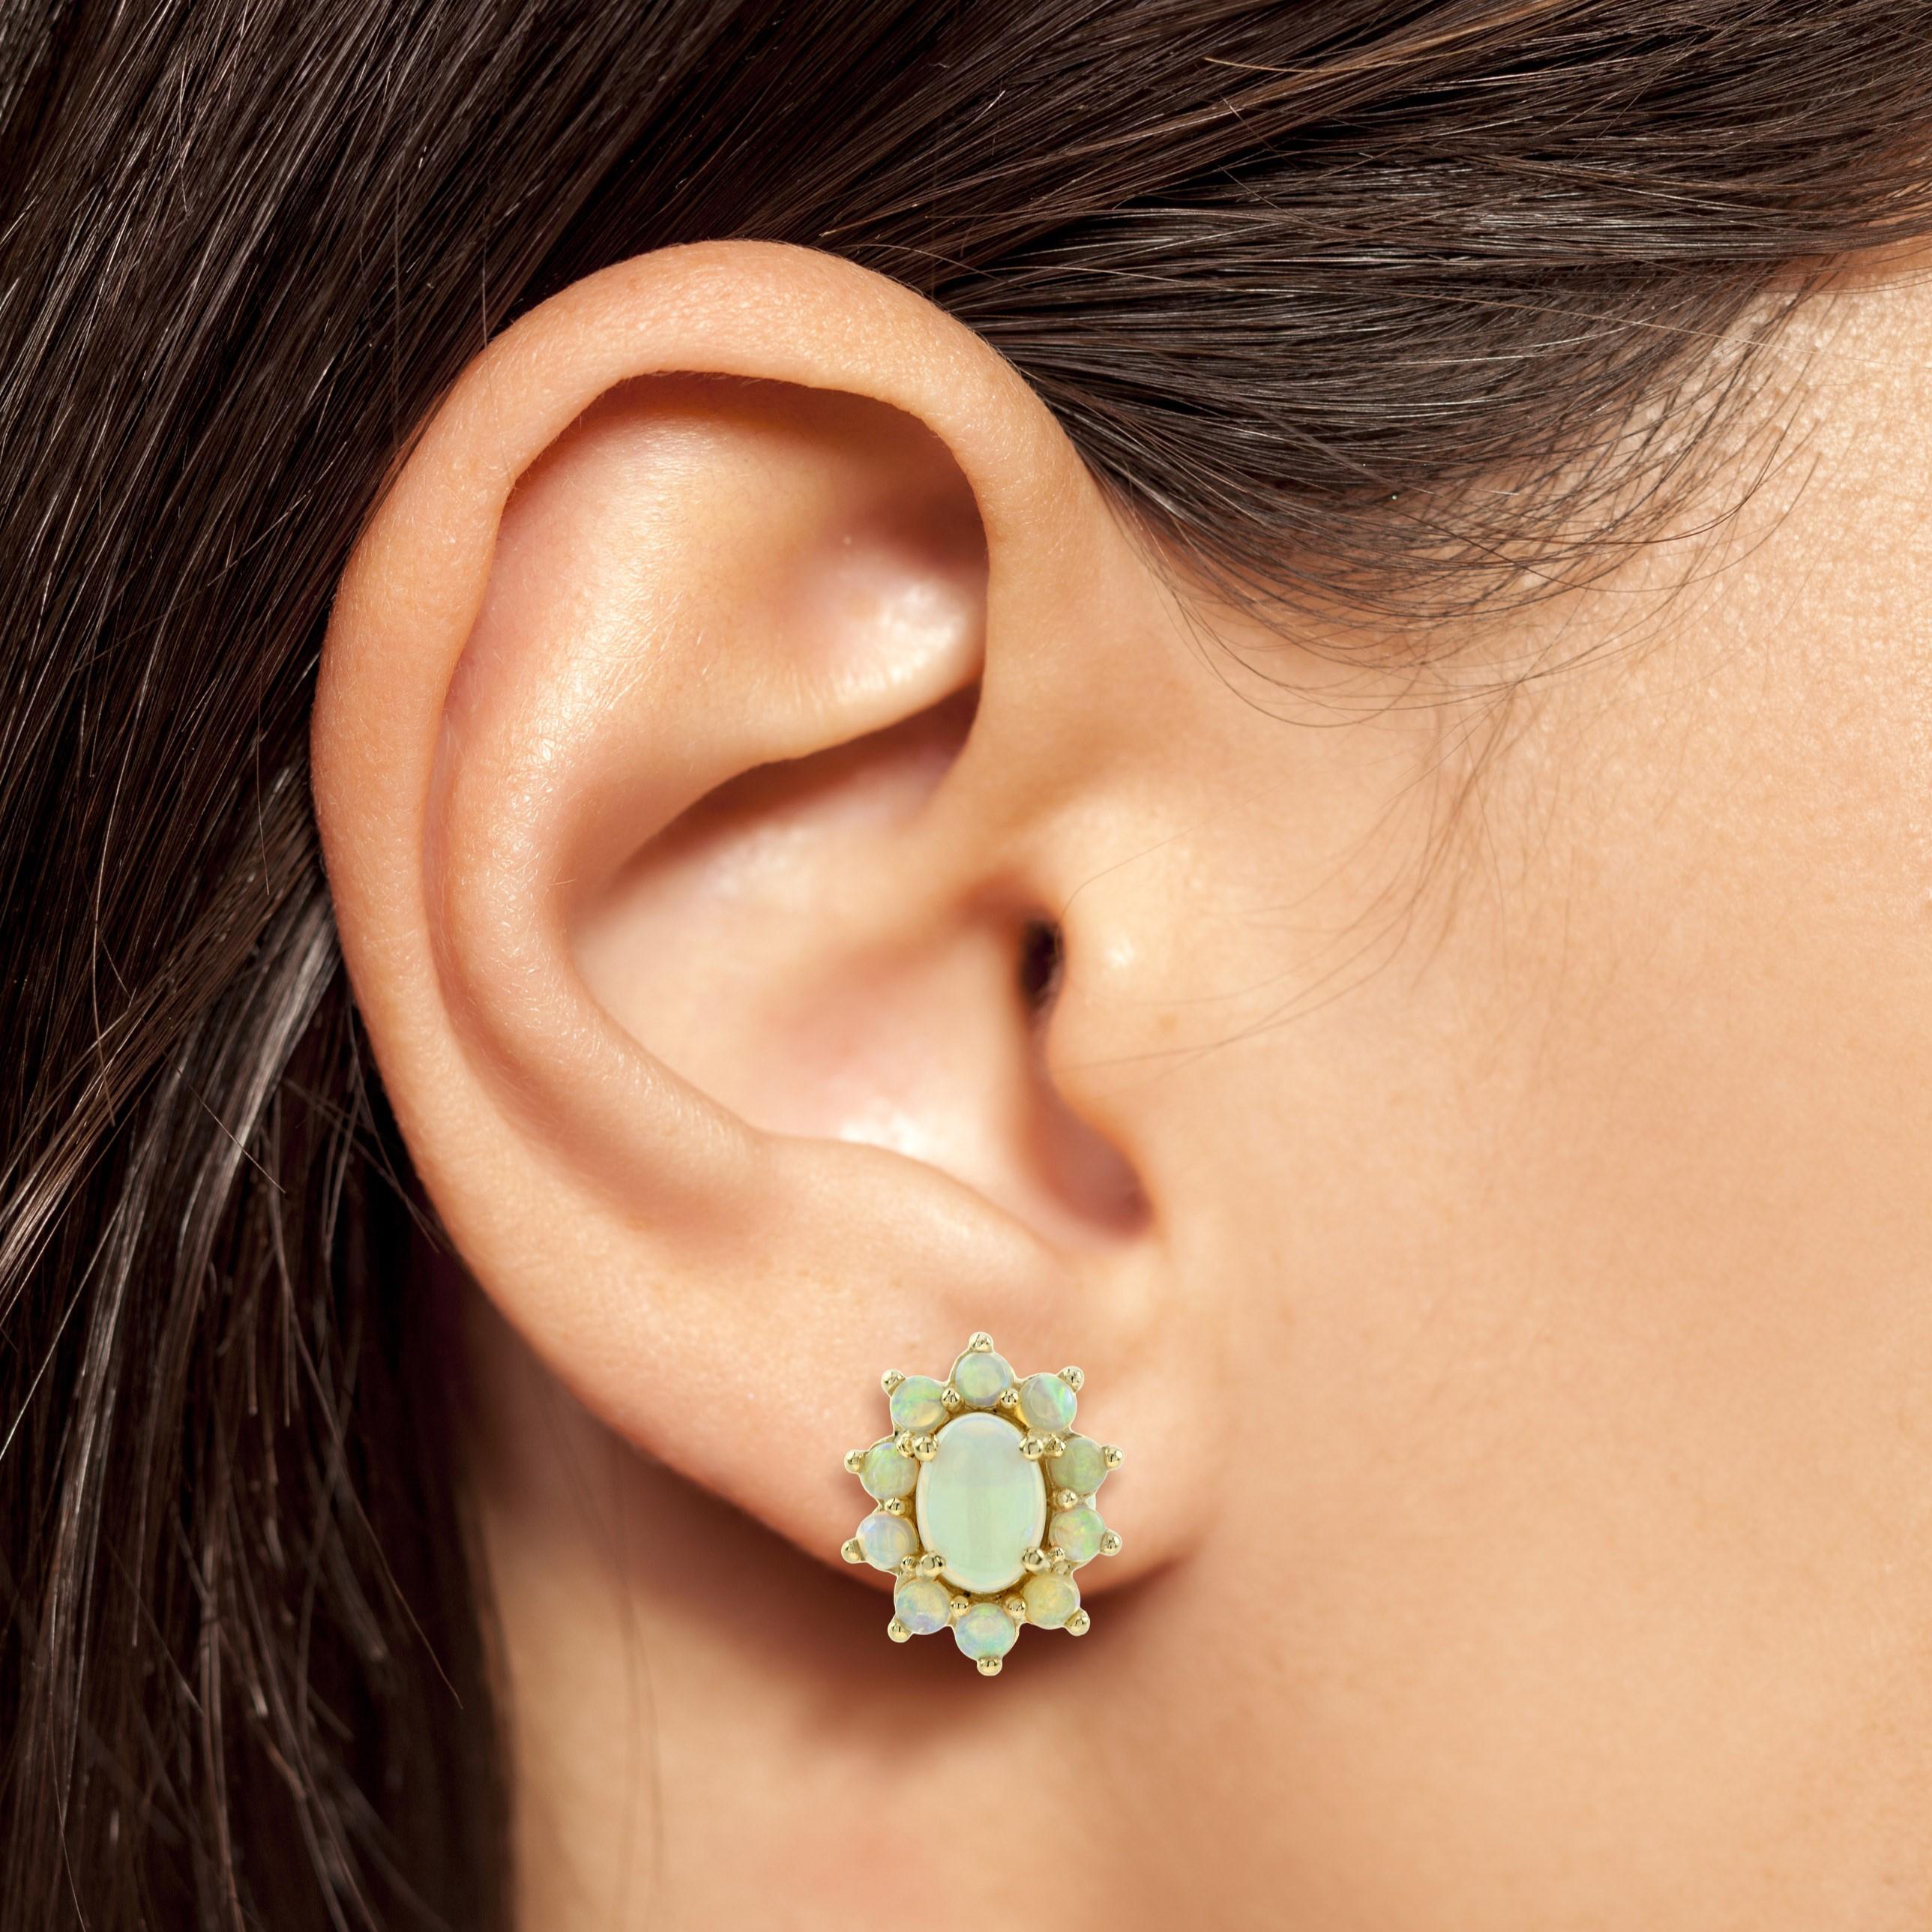 Ein hübsches Paar Opal-Cluster-Ohrringe mit viel Farbenspiel! Jeder Stein ist in 9-karätigem Weißgold gefasst und bildet ein wunderschönes Gesamtbild.
Zehn weiße Opale umgeben einen größeren Opal in der Mitte.

Ohrringe Informationen
Stil: Vintage